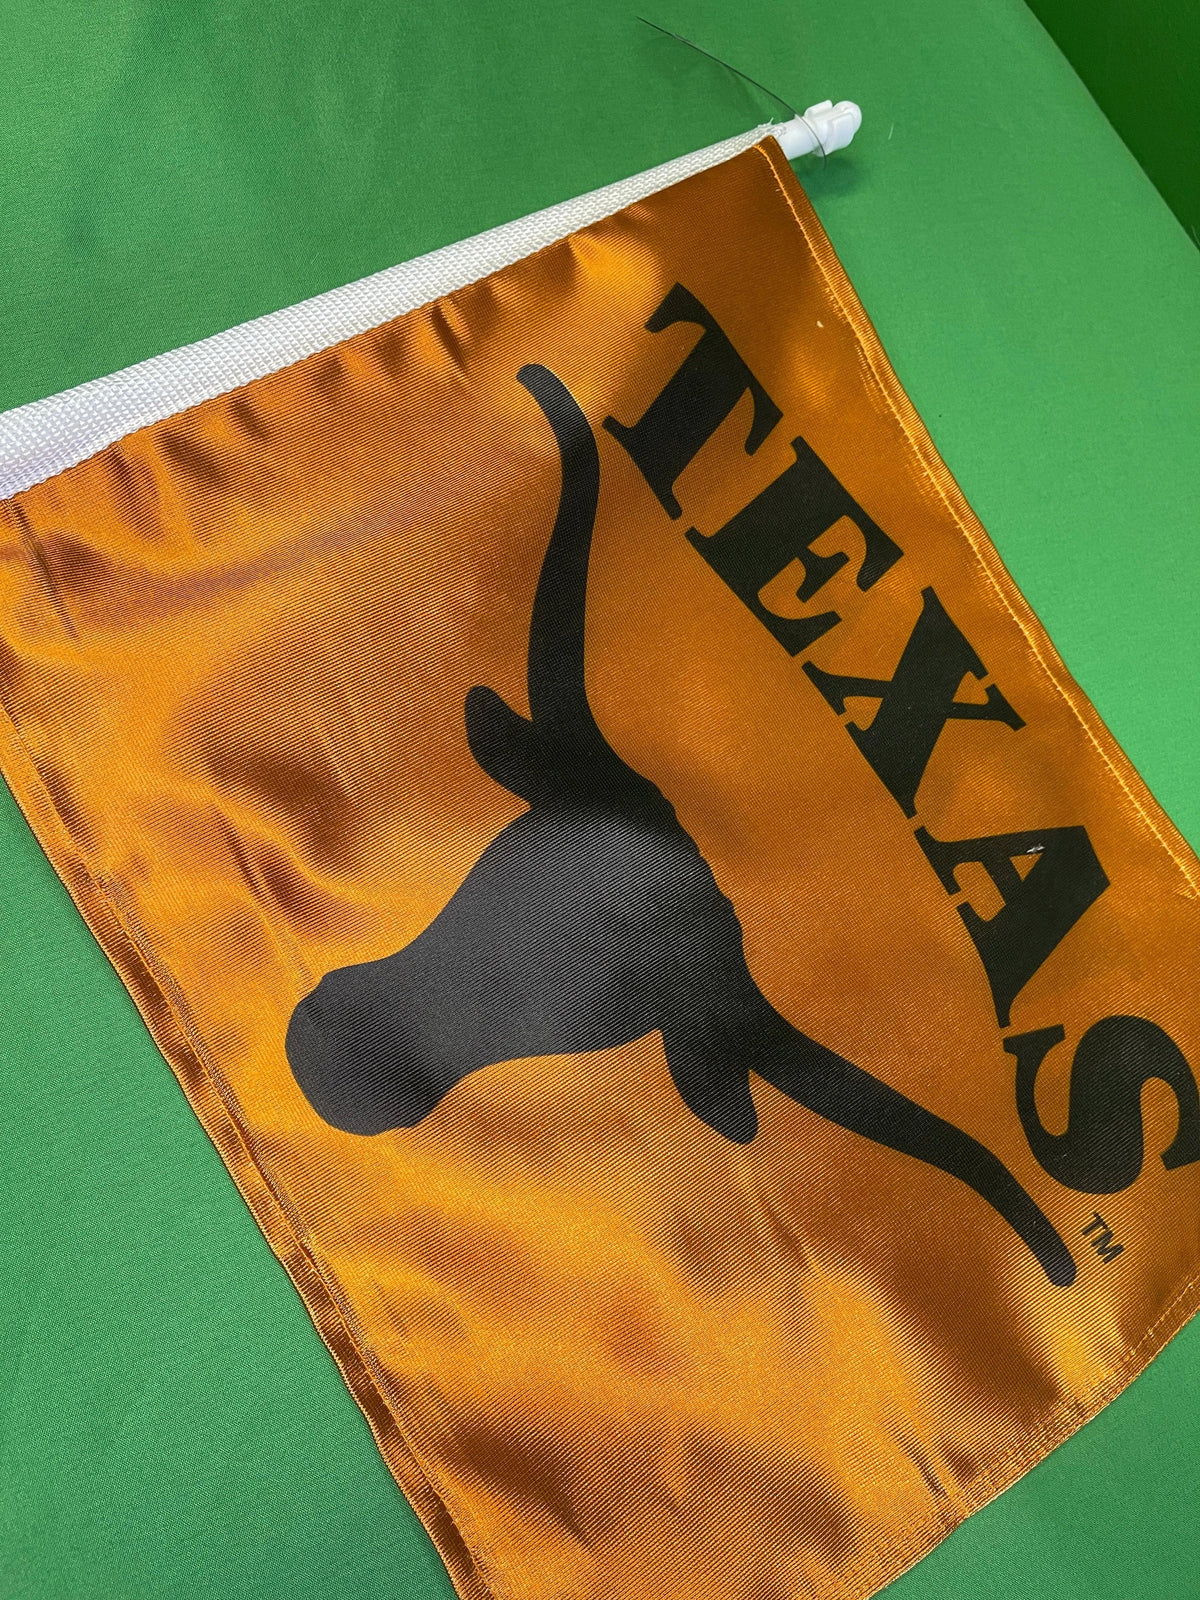 NCAA Texas Longhorns Double-Sided Car Flag NWT